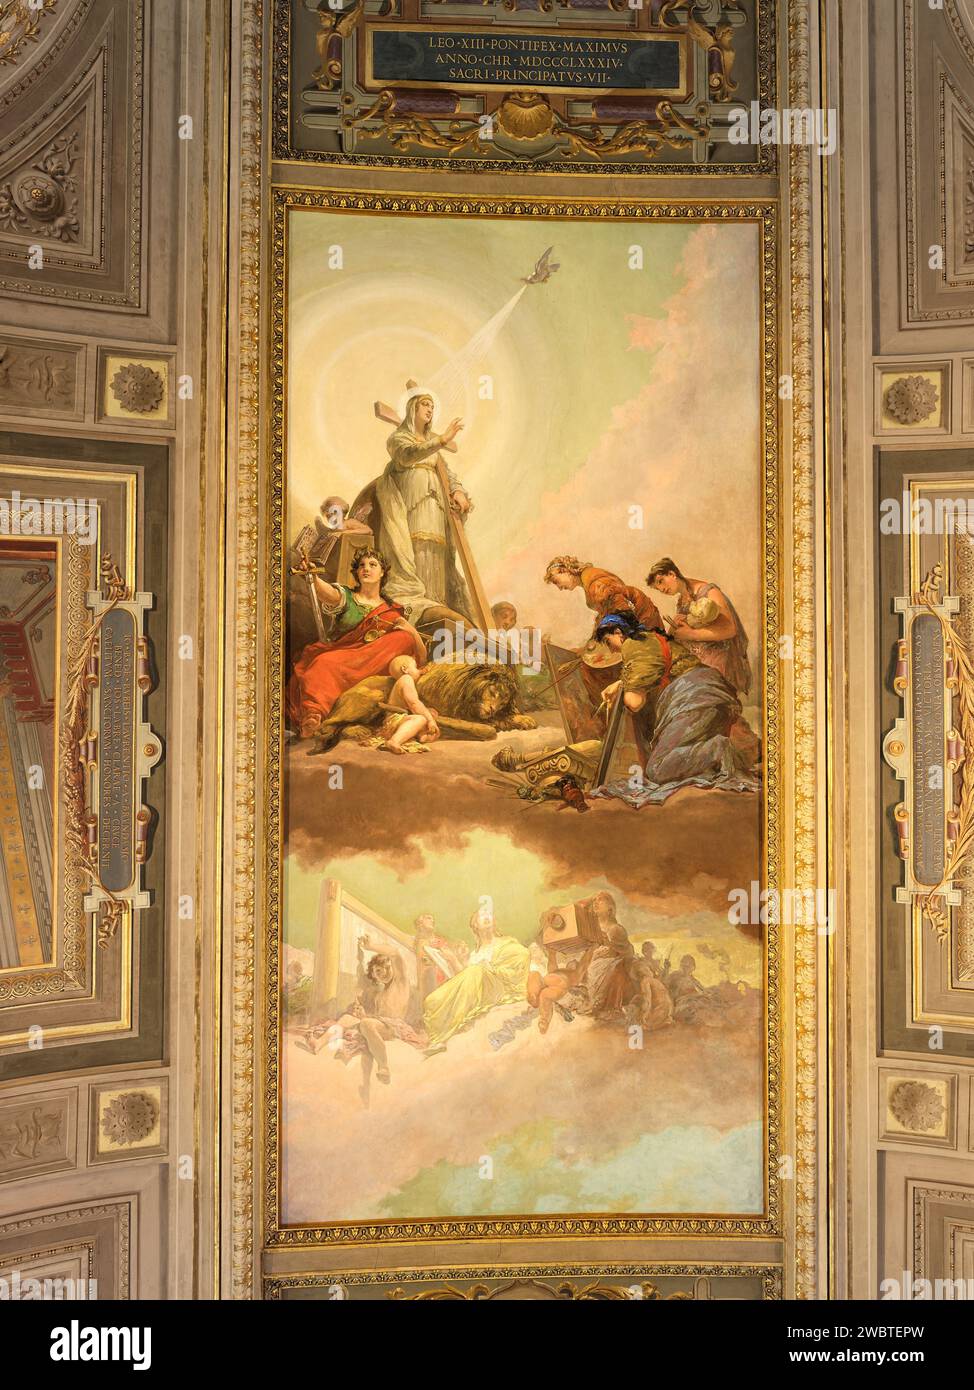 Plafond peint avec triomphe céleste chrétien ; Galleria dei Candelabri, musée du Vatican, Rome, Italie. Banque D'Images